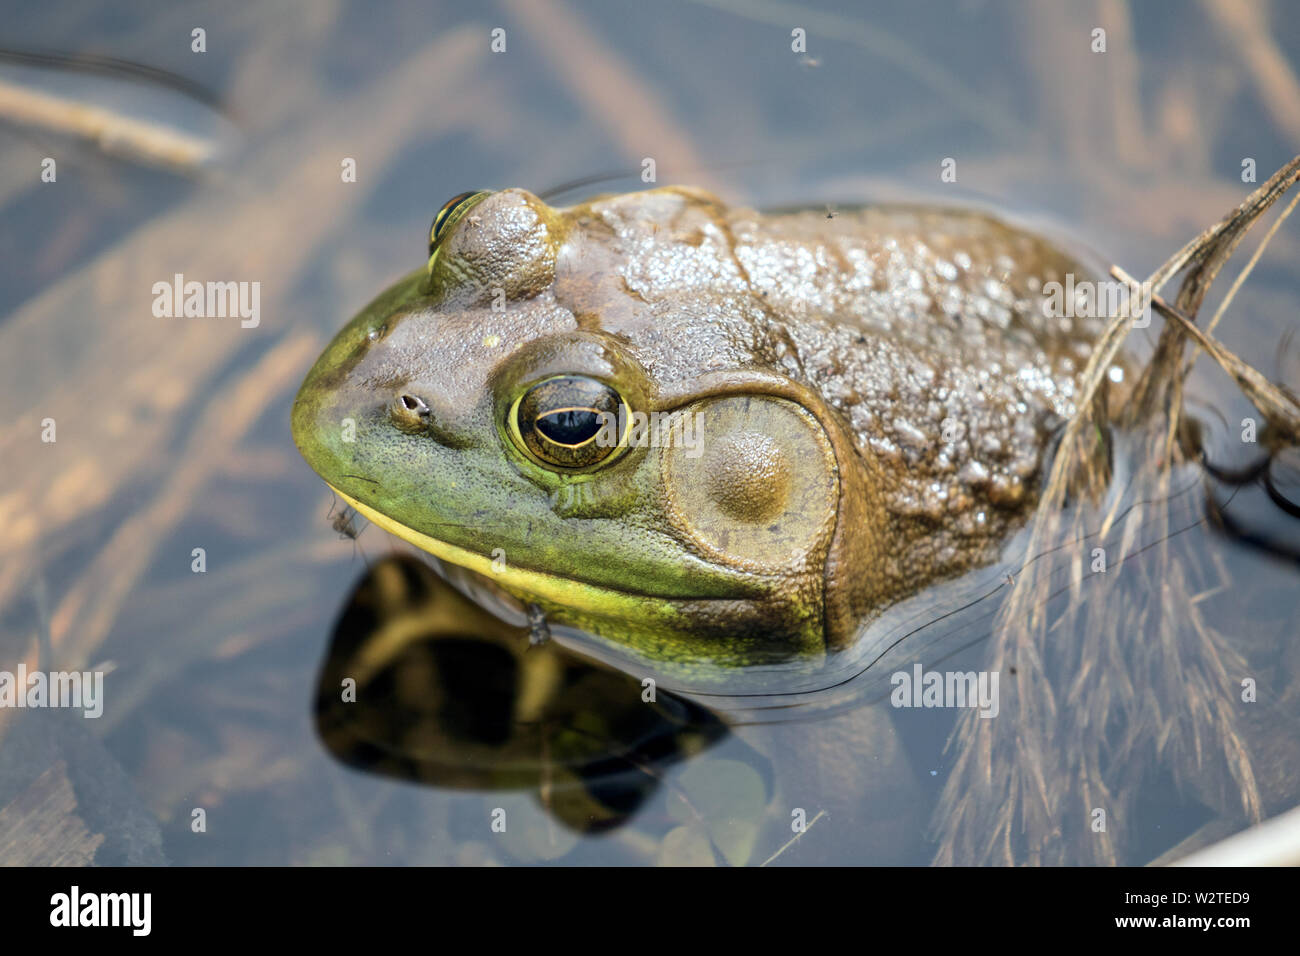 De gros plan homme American Bullfrog en étang,Ontario,Canada.nom scientifique de cette grenouille est Lithobates catesbeianus. Banque D'Images